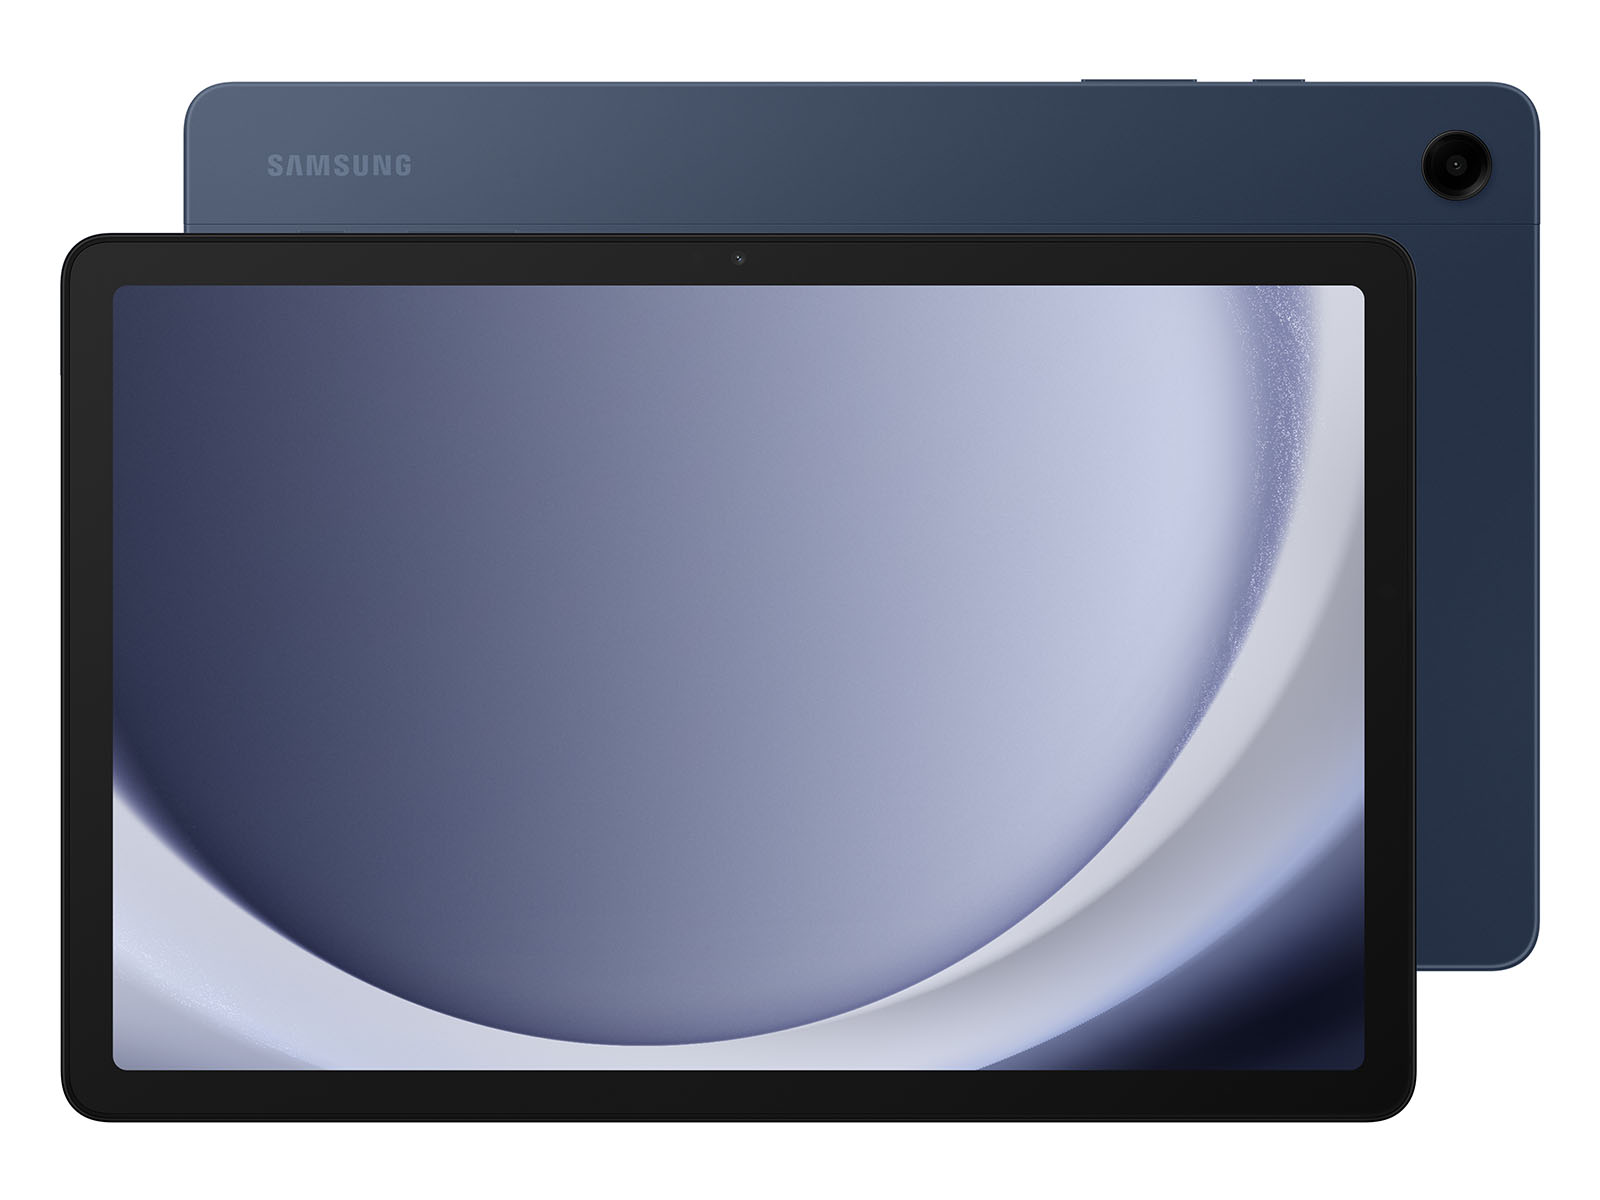 Galaxy Tab S2 8.0 32GB (Wi-Fi) Tablets - SM-T713NZKEXAR